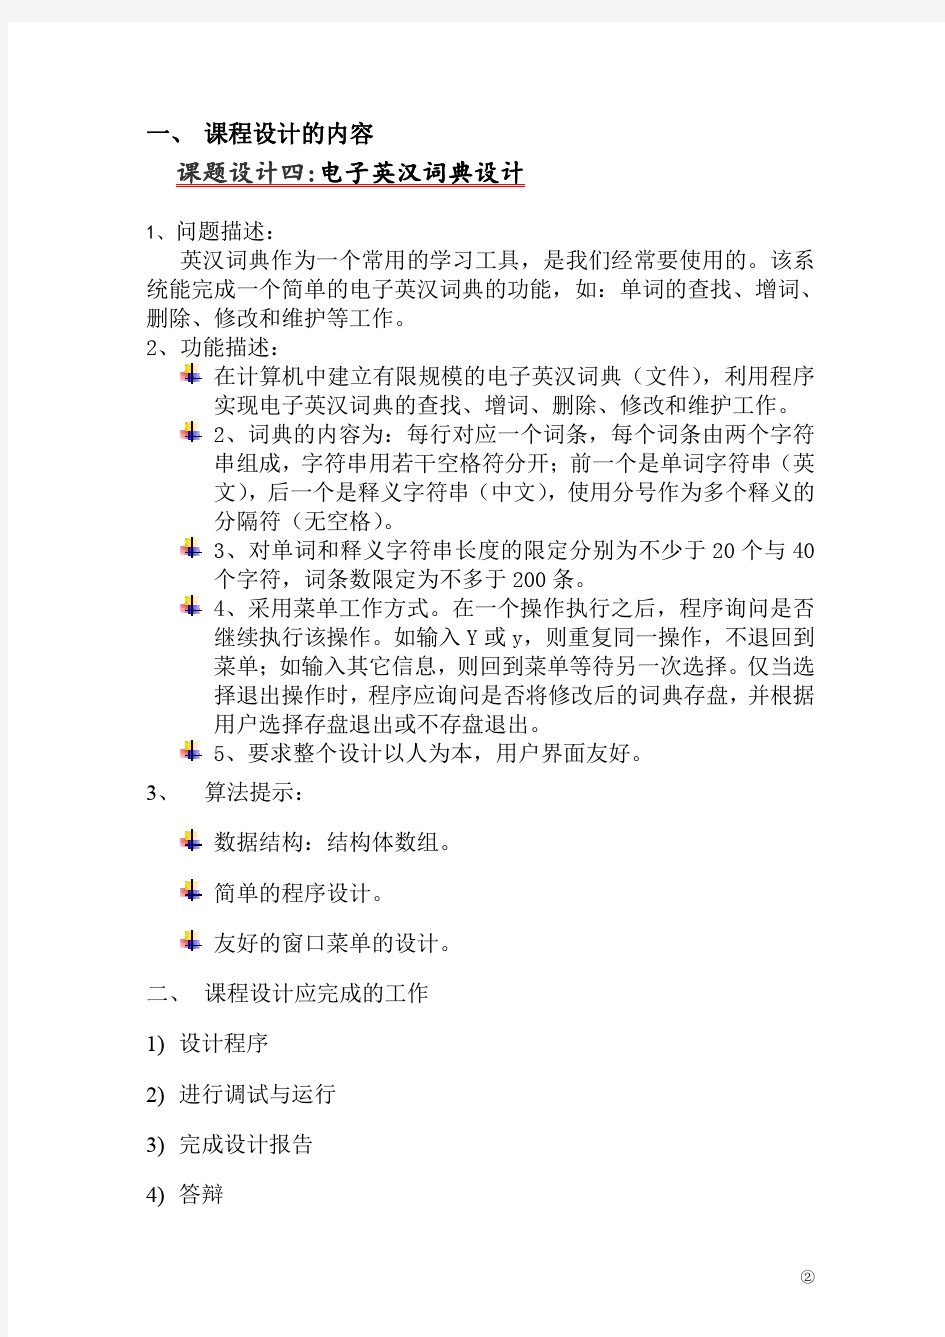 英汉电子词典设计报告_设计_C语言_C语言程序设计